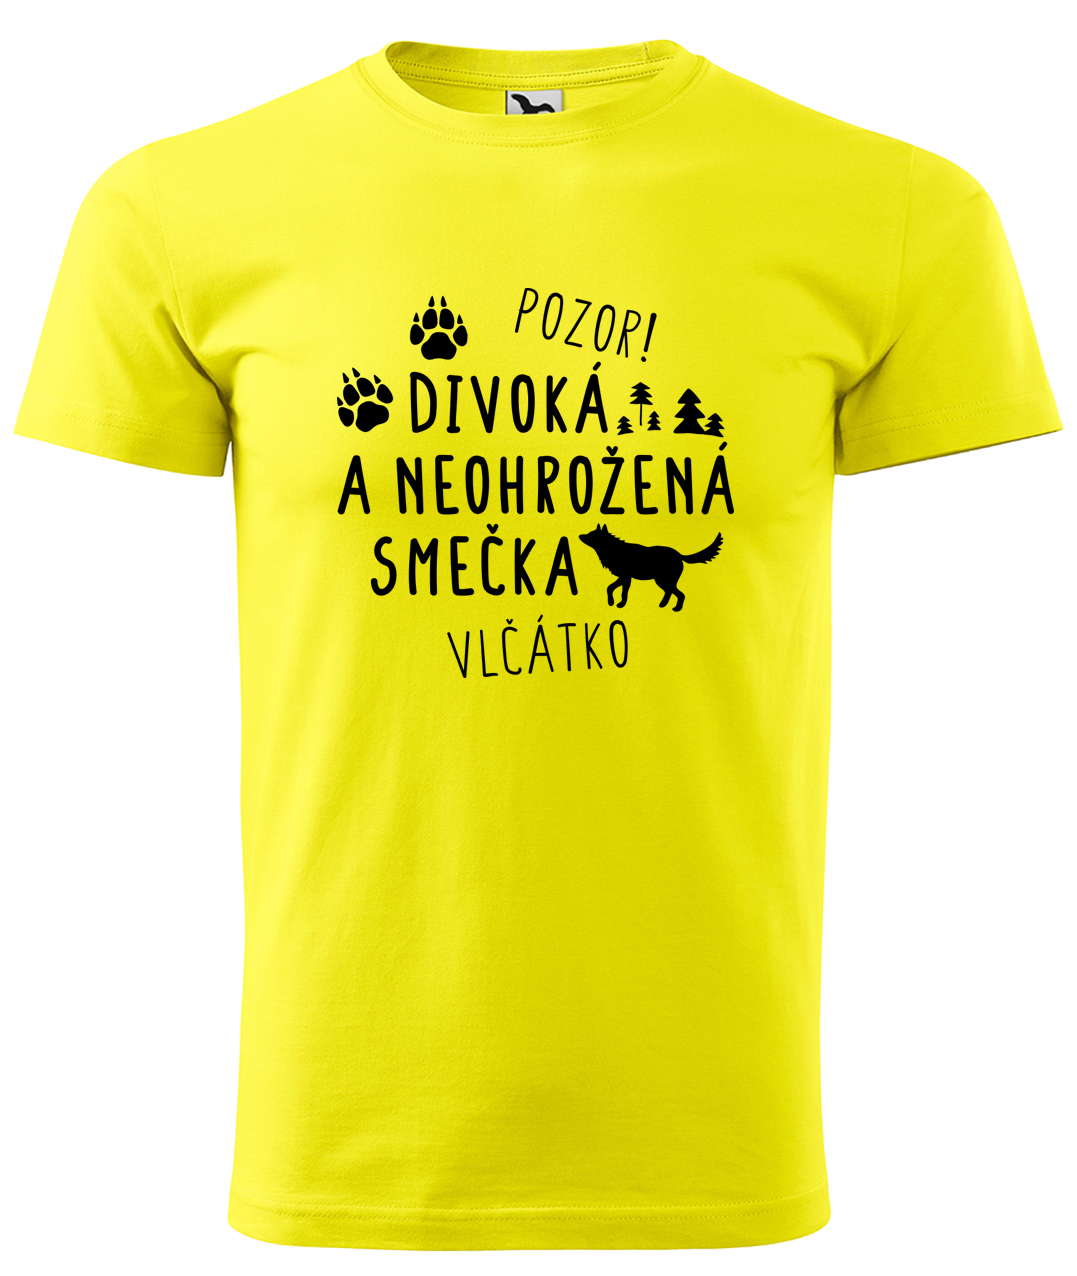 Dětské tričko s vlkem - Divoká a neohrožená smečka Velikost: 4 roky / 110 cm, Barva: Žlutá (04), Délka rukávu: Krátký rukáv